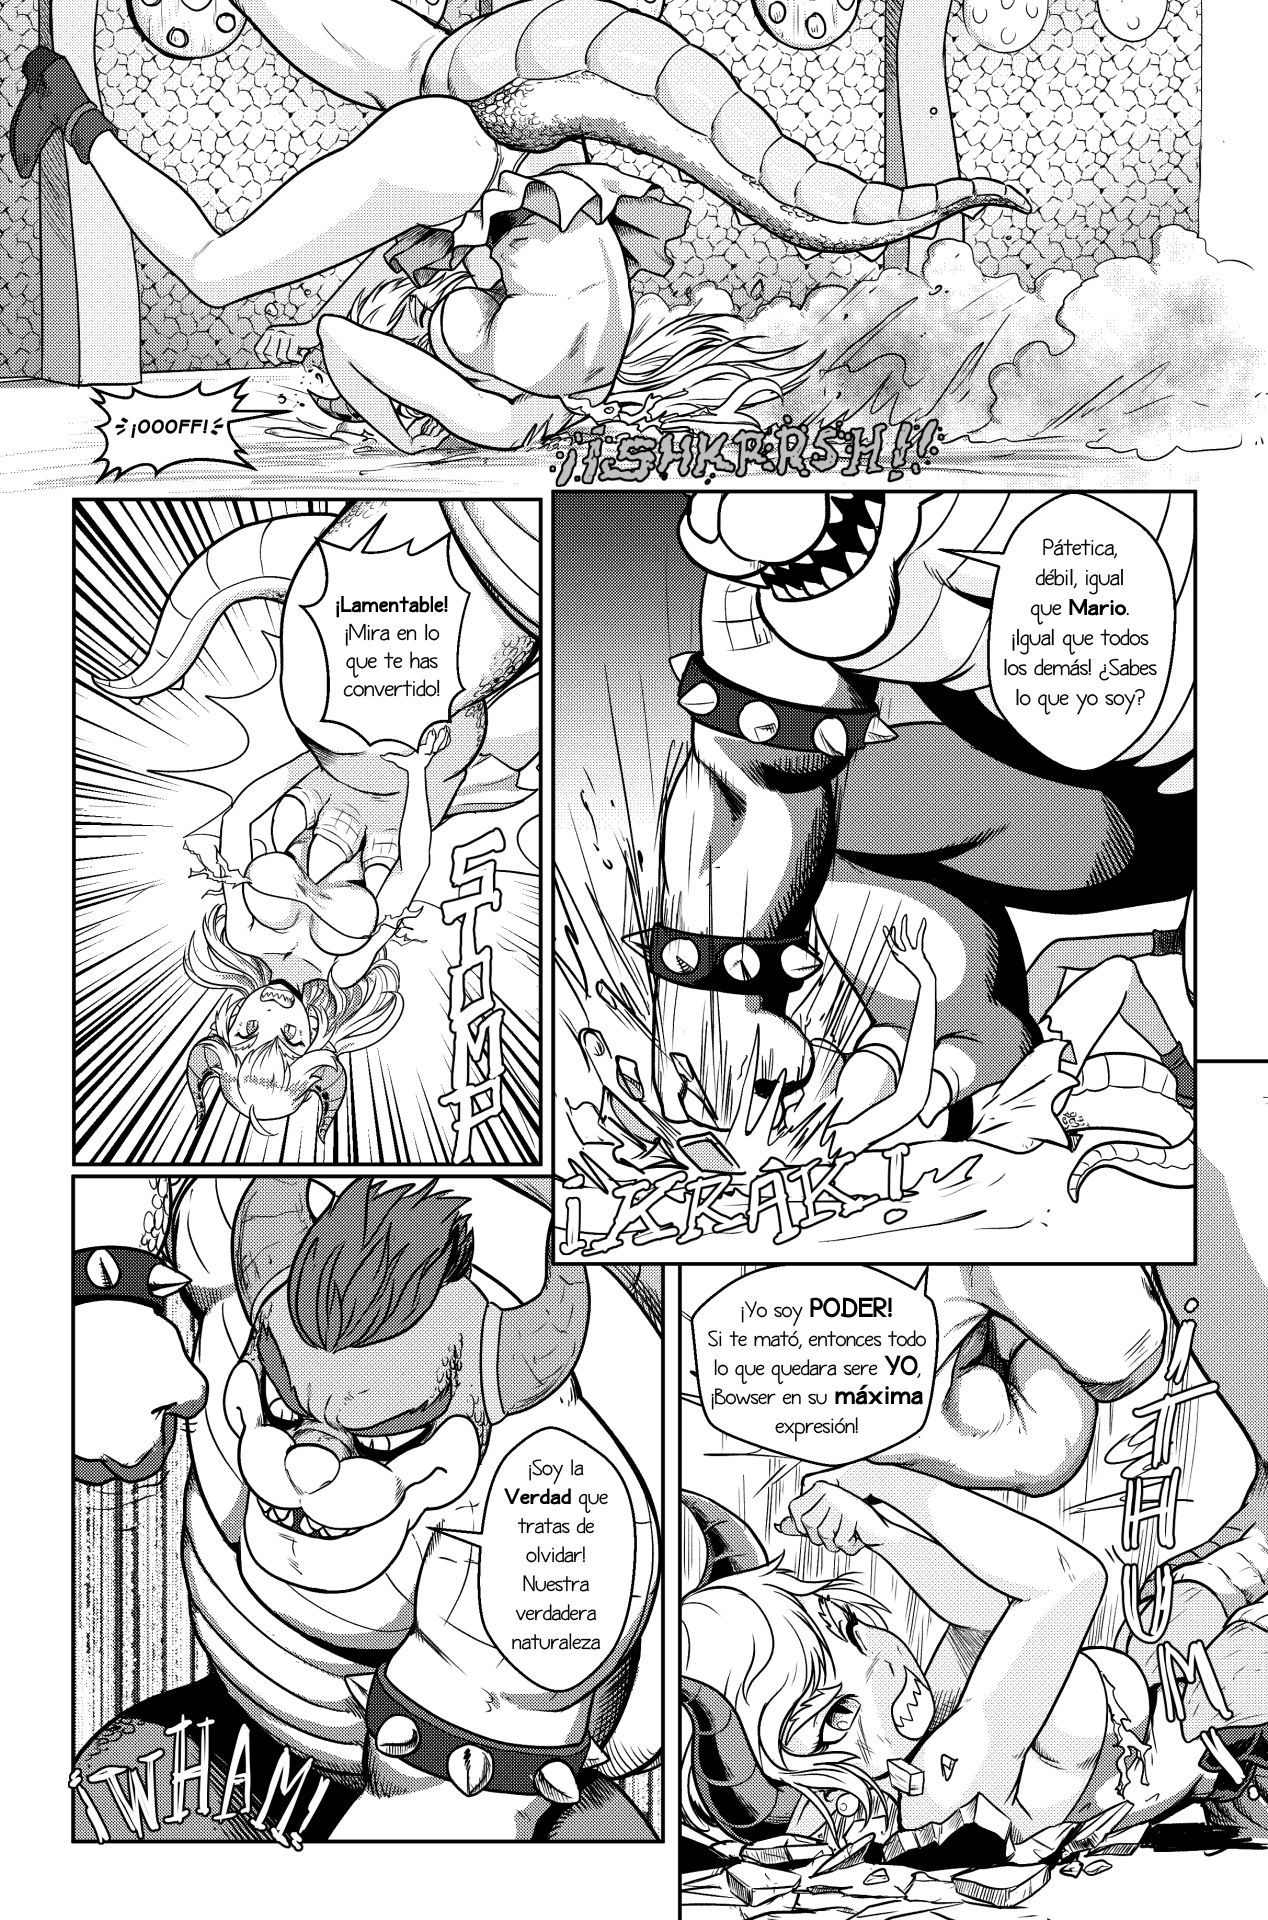 [Pencils] Bowsette Saga Vol.1 Y Vol.2 Completos - Vol.3 En Progreso (Mario Bros.) [Spanish] by Arkoniusx 61